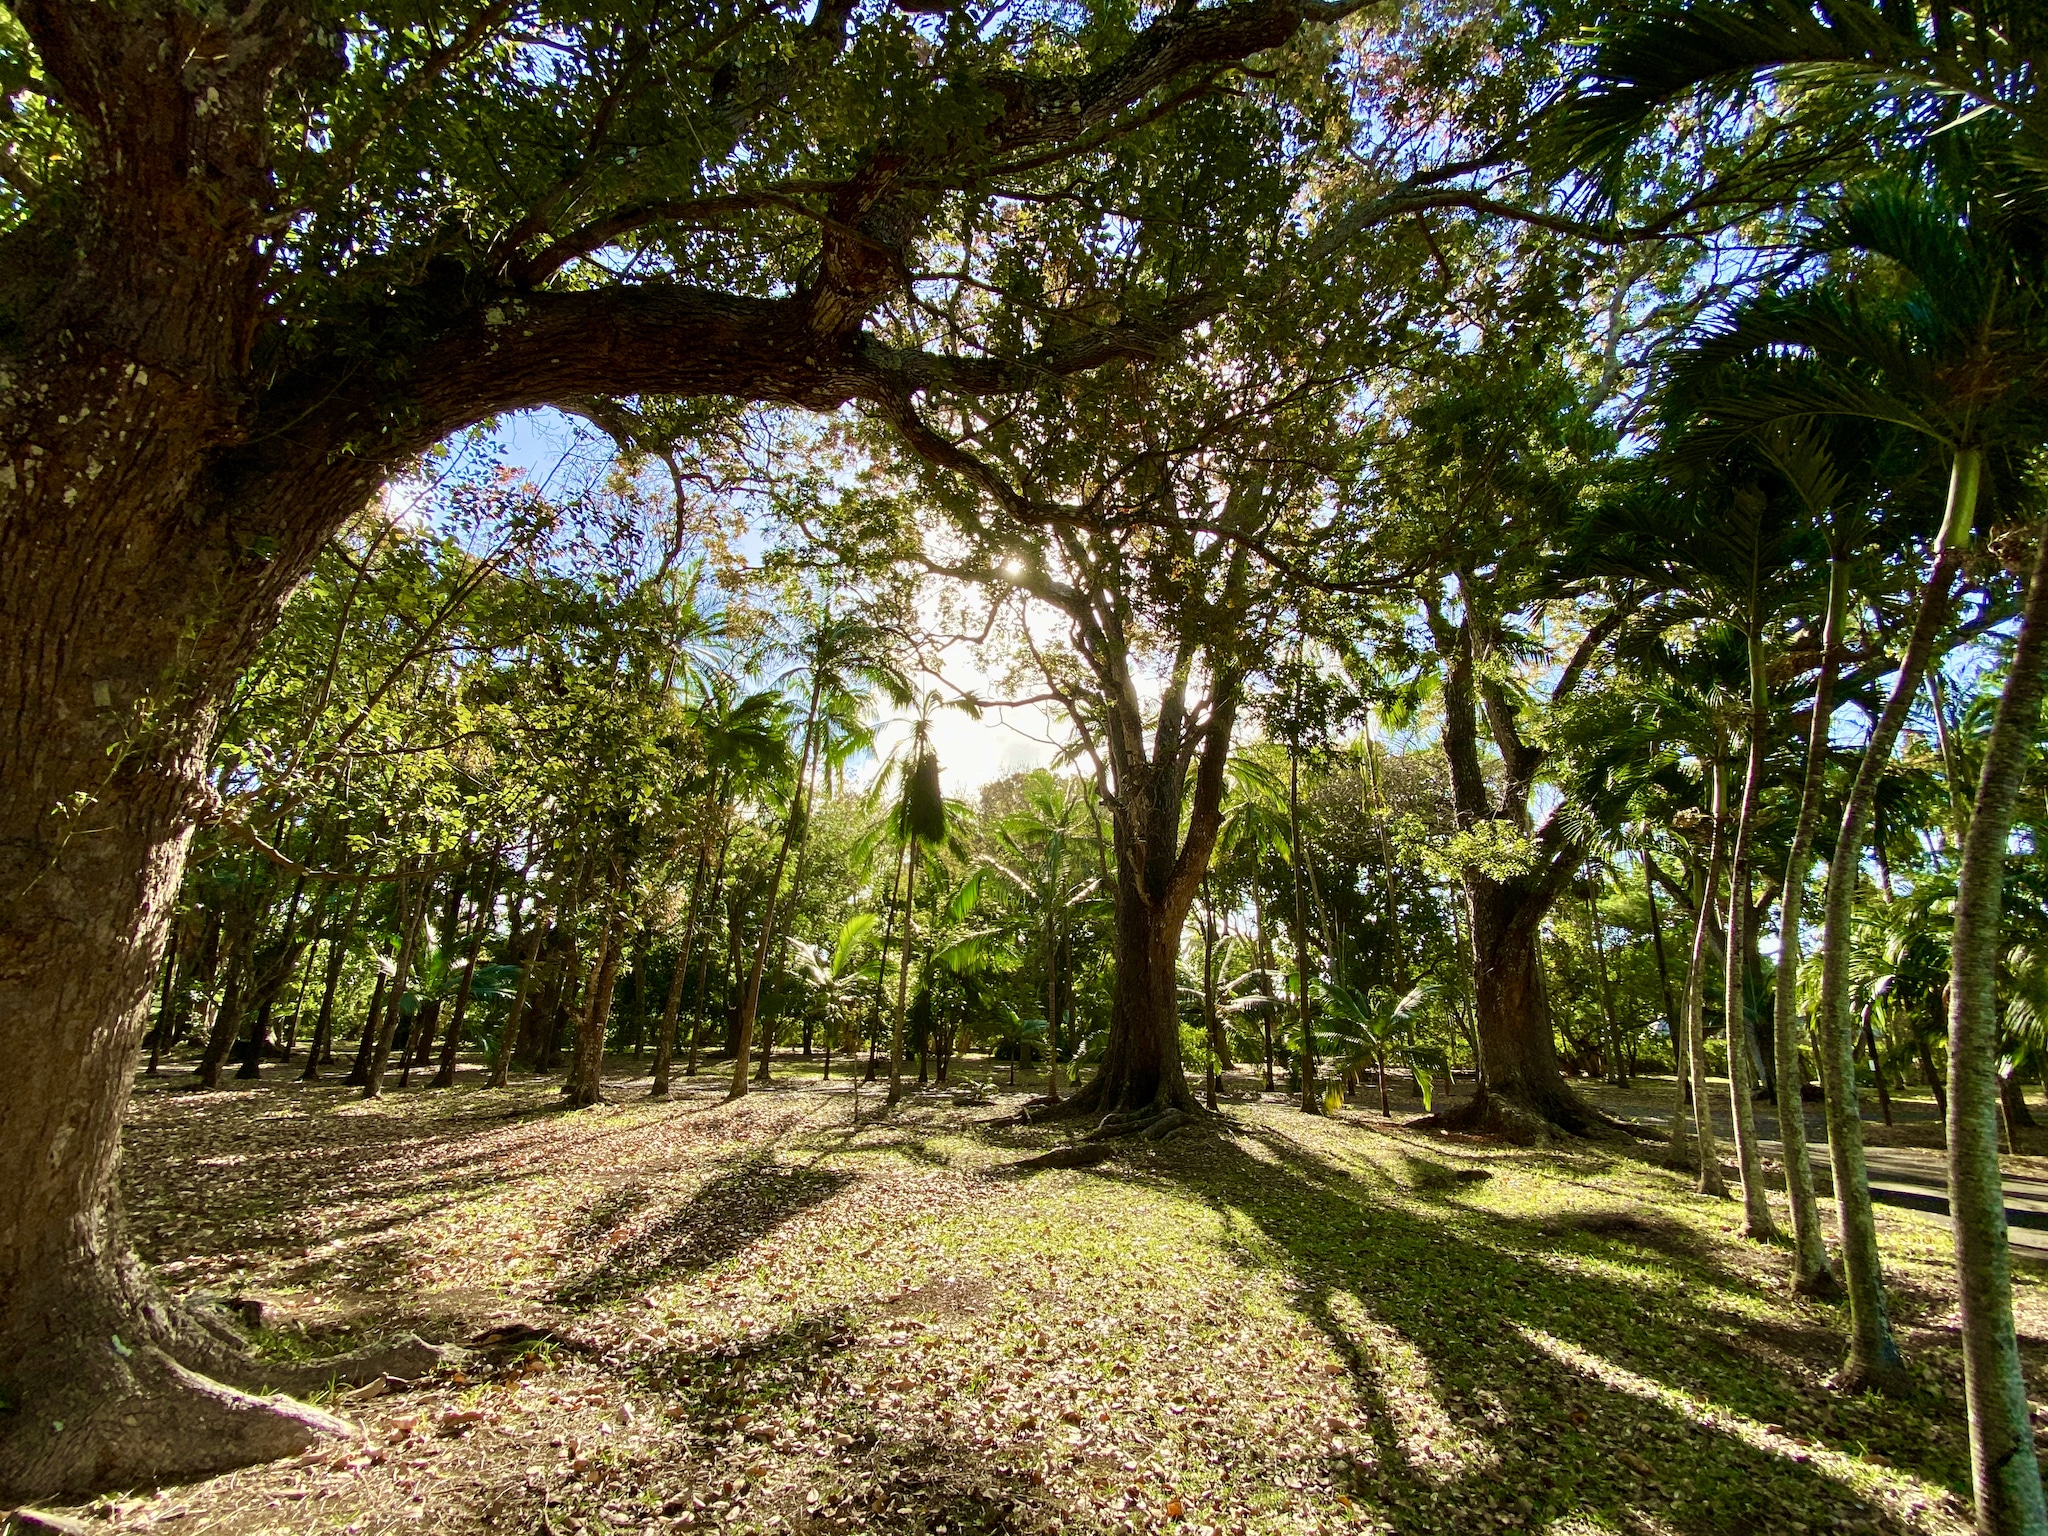 Der Sir Seewoosagur Ramgoolam Botanical Garden befindet sich in der Stadt Pamplemousses auf Mauritius. Er ist der älteste botanische Garten auf Mauritius. Der Garten erstreckt sich über eine Fläche von 37 Hektar und ist ganzjährig für die Öffentlichkeit zugänglich. Der Eintritt in den Sir Seewoosagur Ramgoolam Botanical Garden ist kostenlos.